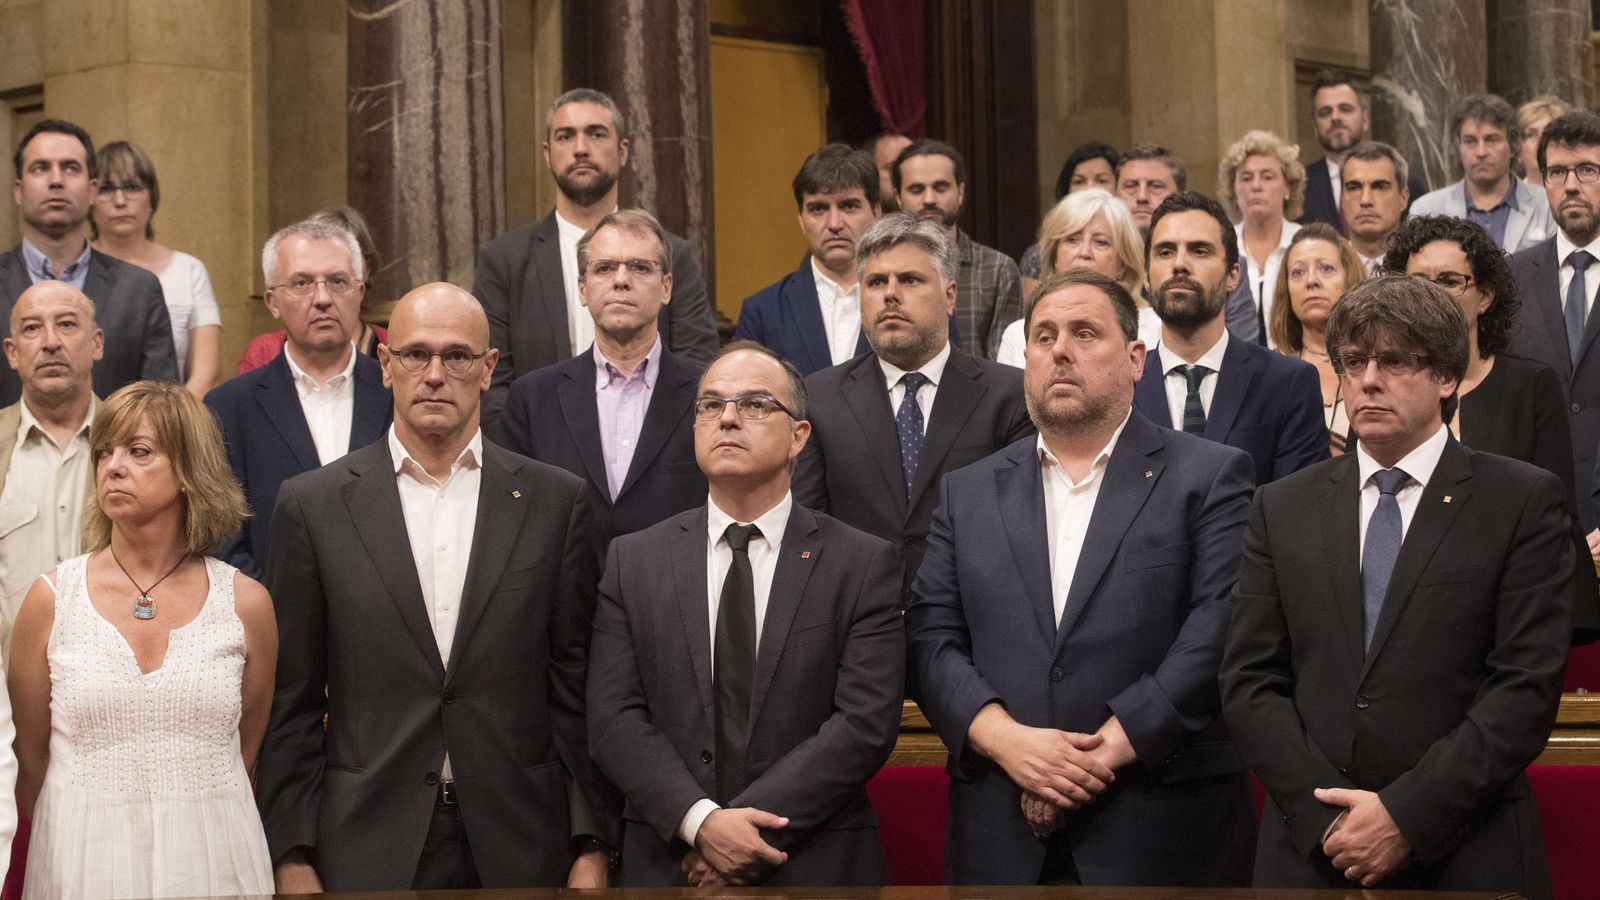 Foto: El presidente de la Generalitat, Carles Puigdemont, su vicepresidente, Oriol Junqueras, el conseller de Presidencia, Jordi Turull y otros miembros del Govern. (Efe) 